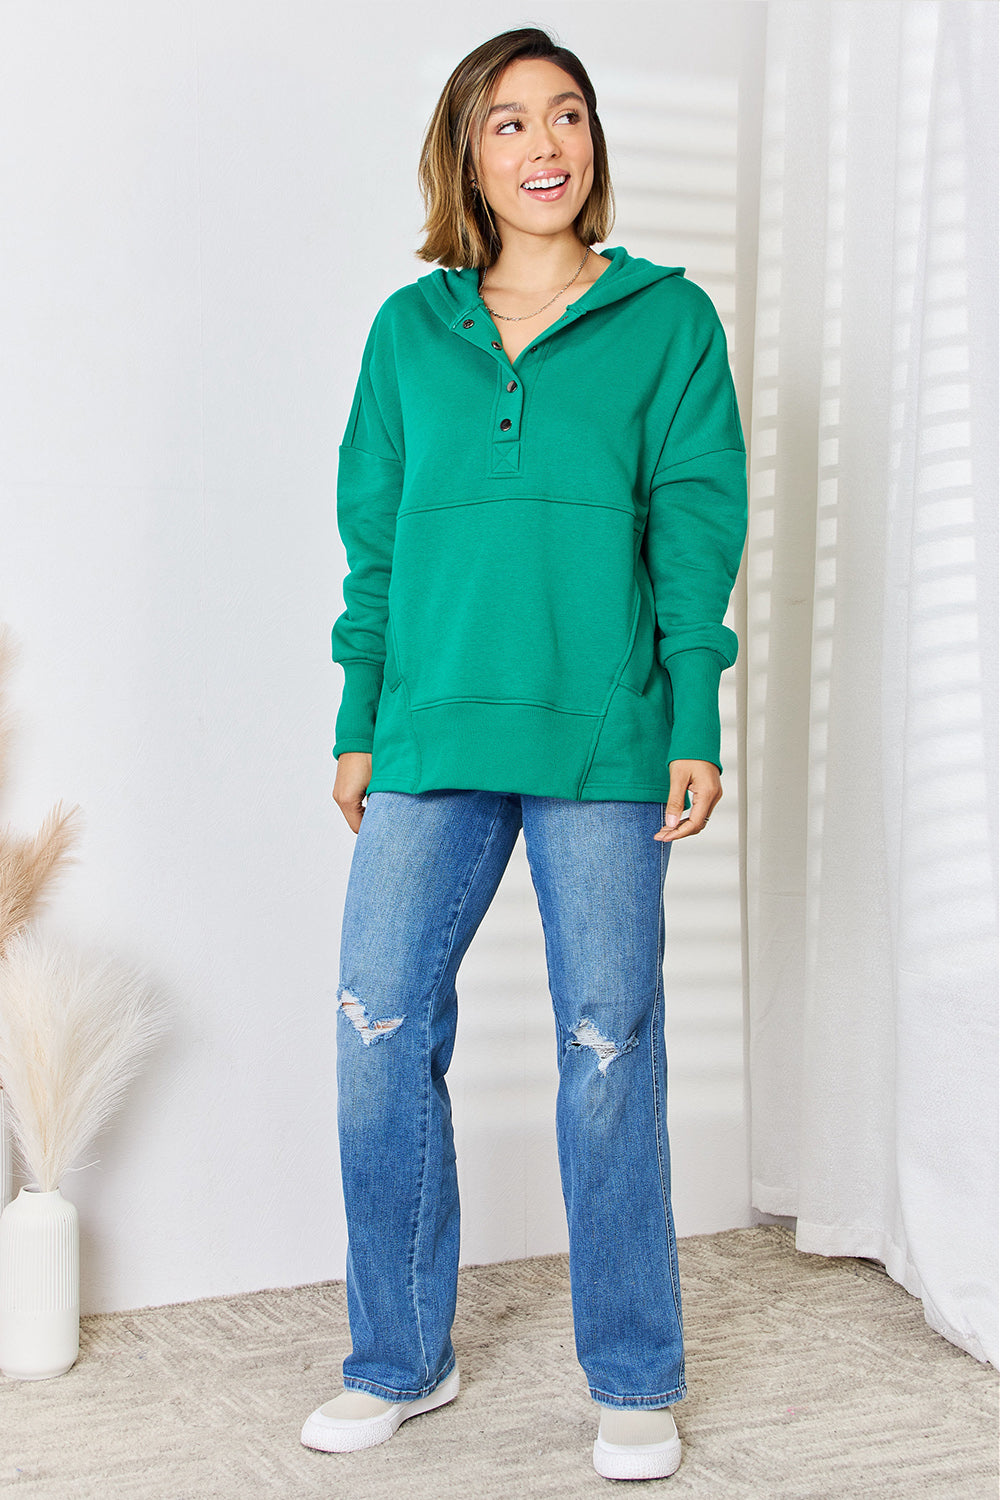 Women's Green Oversized Pullover Hoodie Sweatshirt